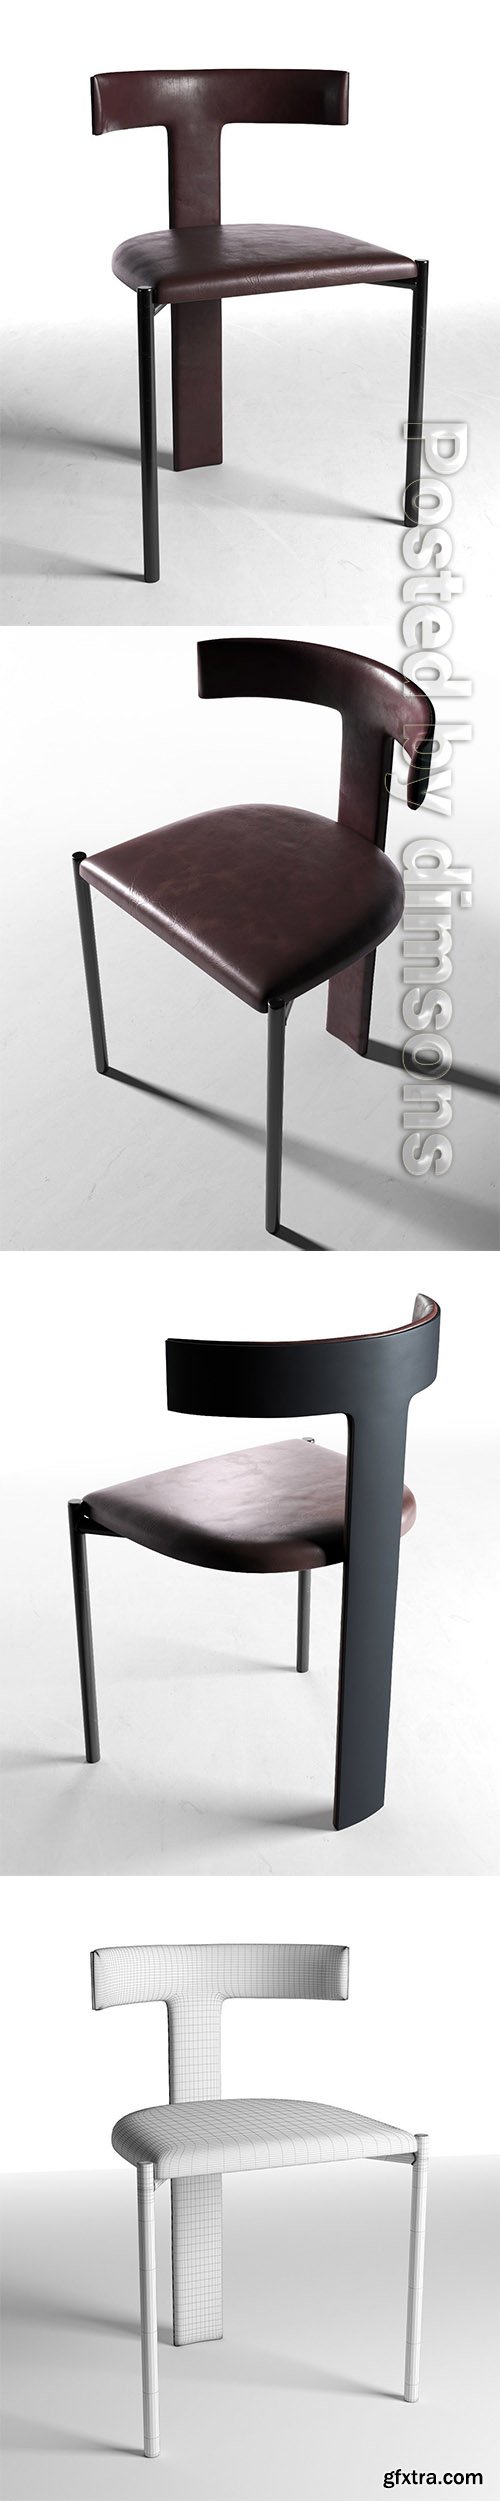 Cgtrader - Zefir Chair 3D model